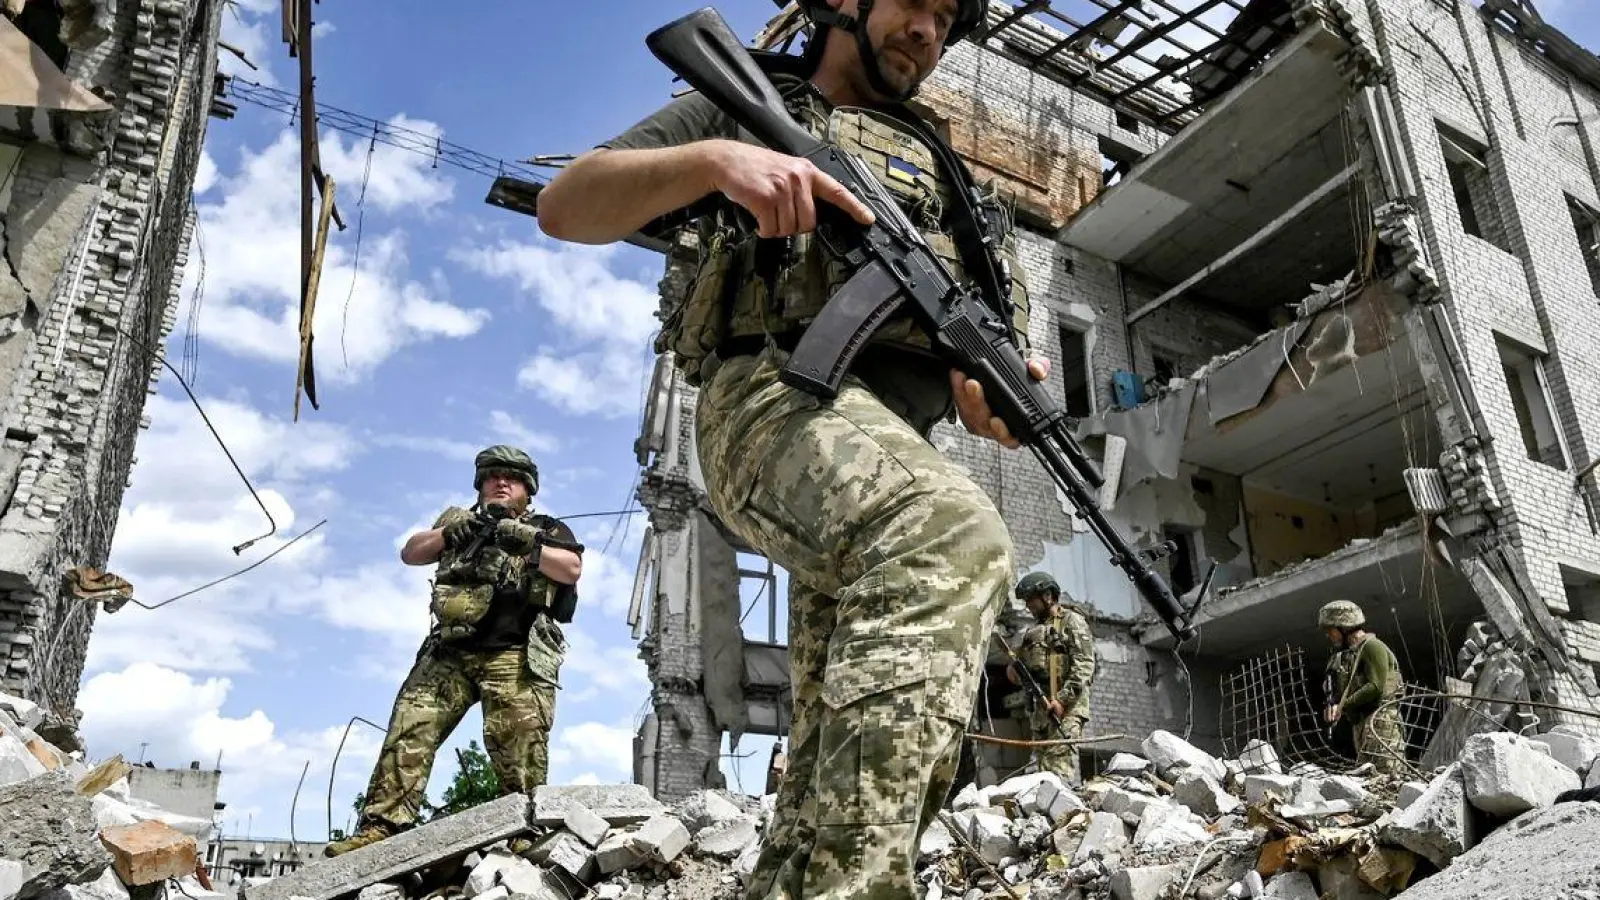 Ukrainische Soldaten im Einsatz: Seit 819 Tagen verteidigen sie ihr Land gegen den russischen Angriffskrieg. (Foto: ukrin/dpa)